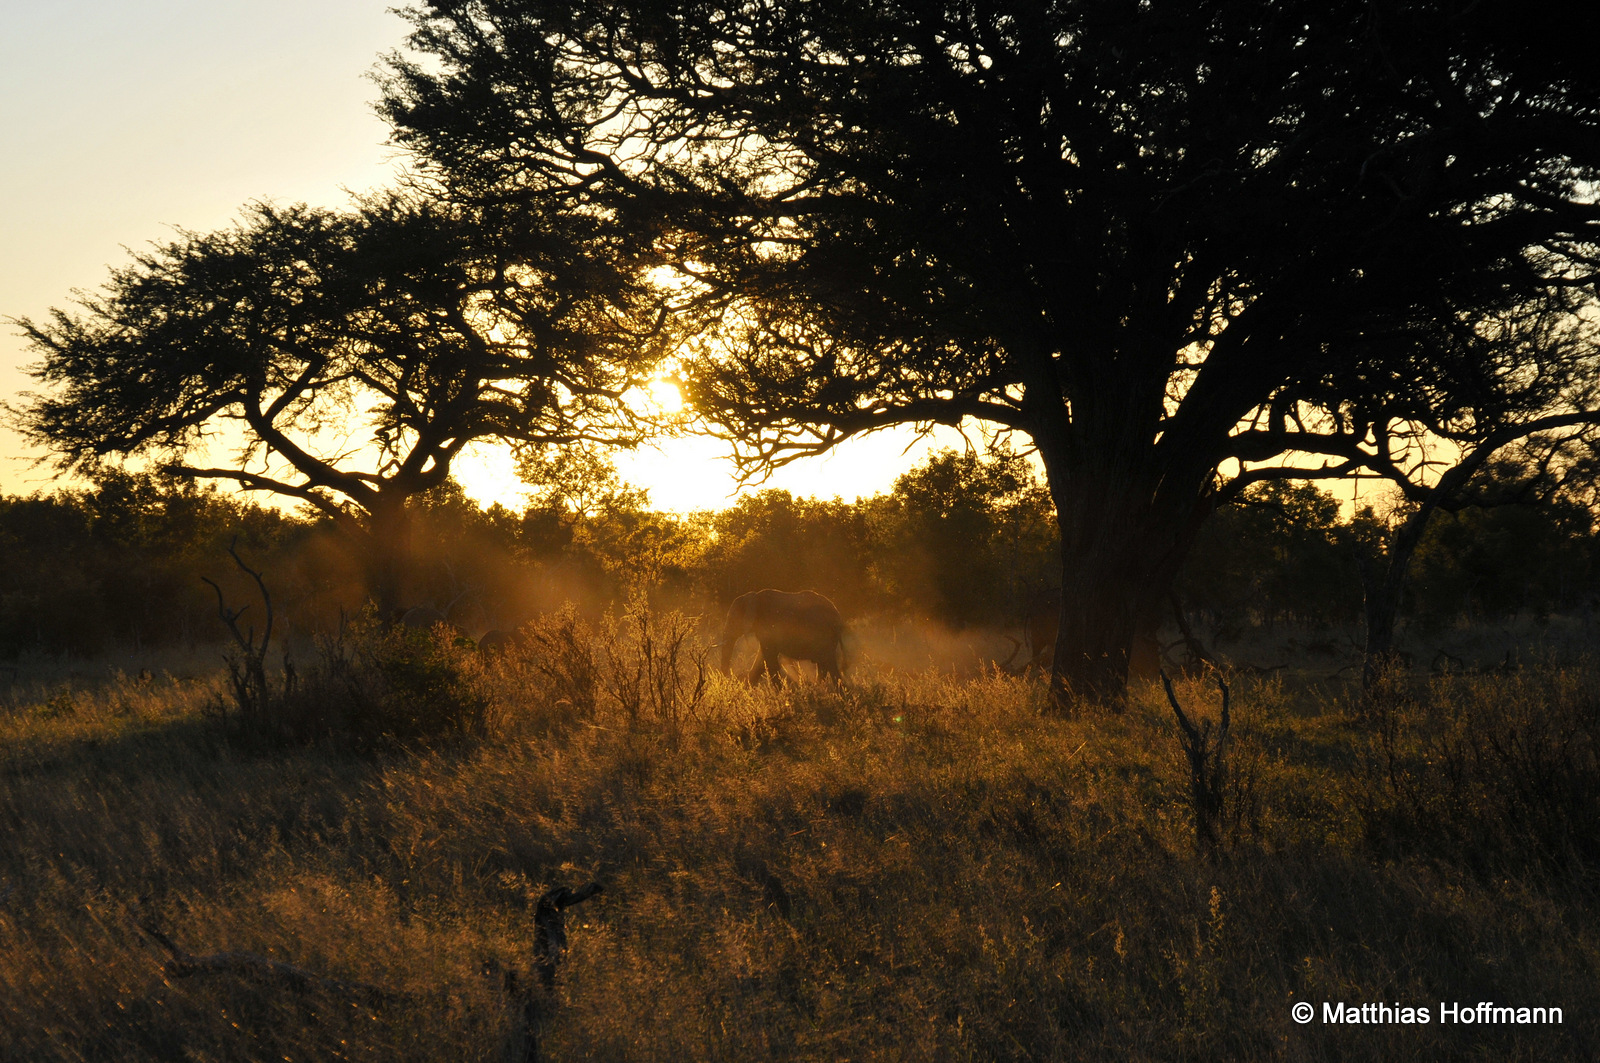 Elefant | Elephant | Hwange National Park | Zimbabwe